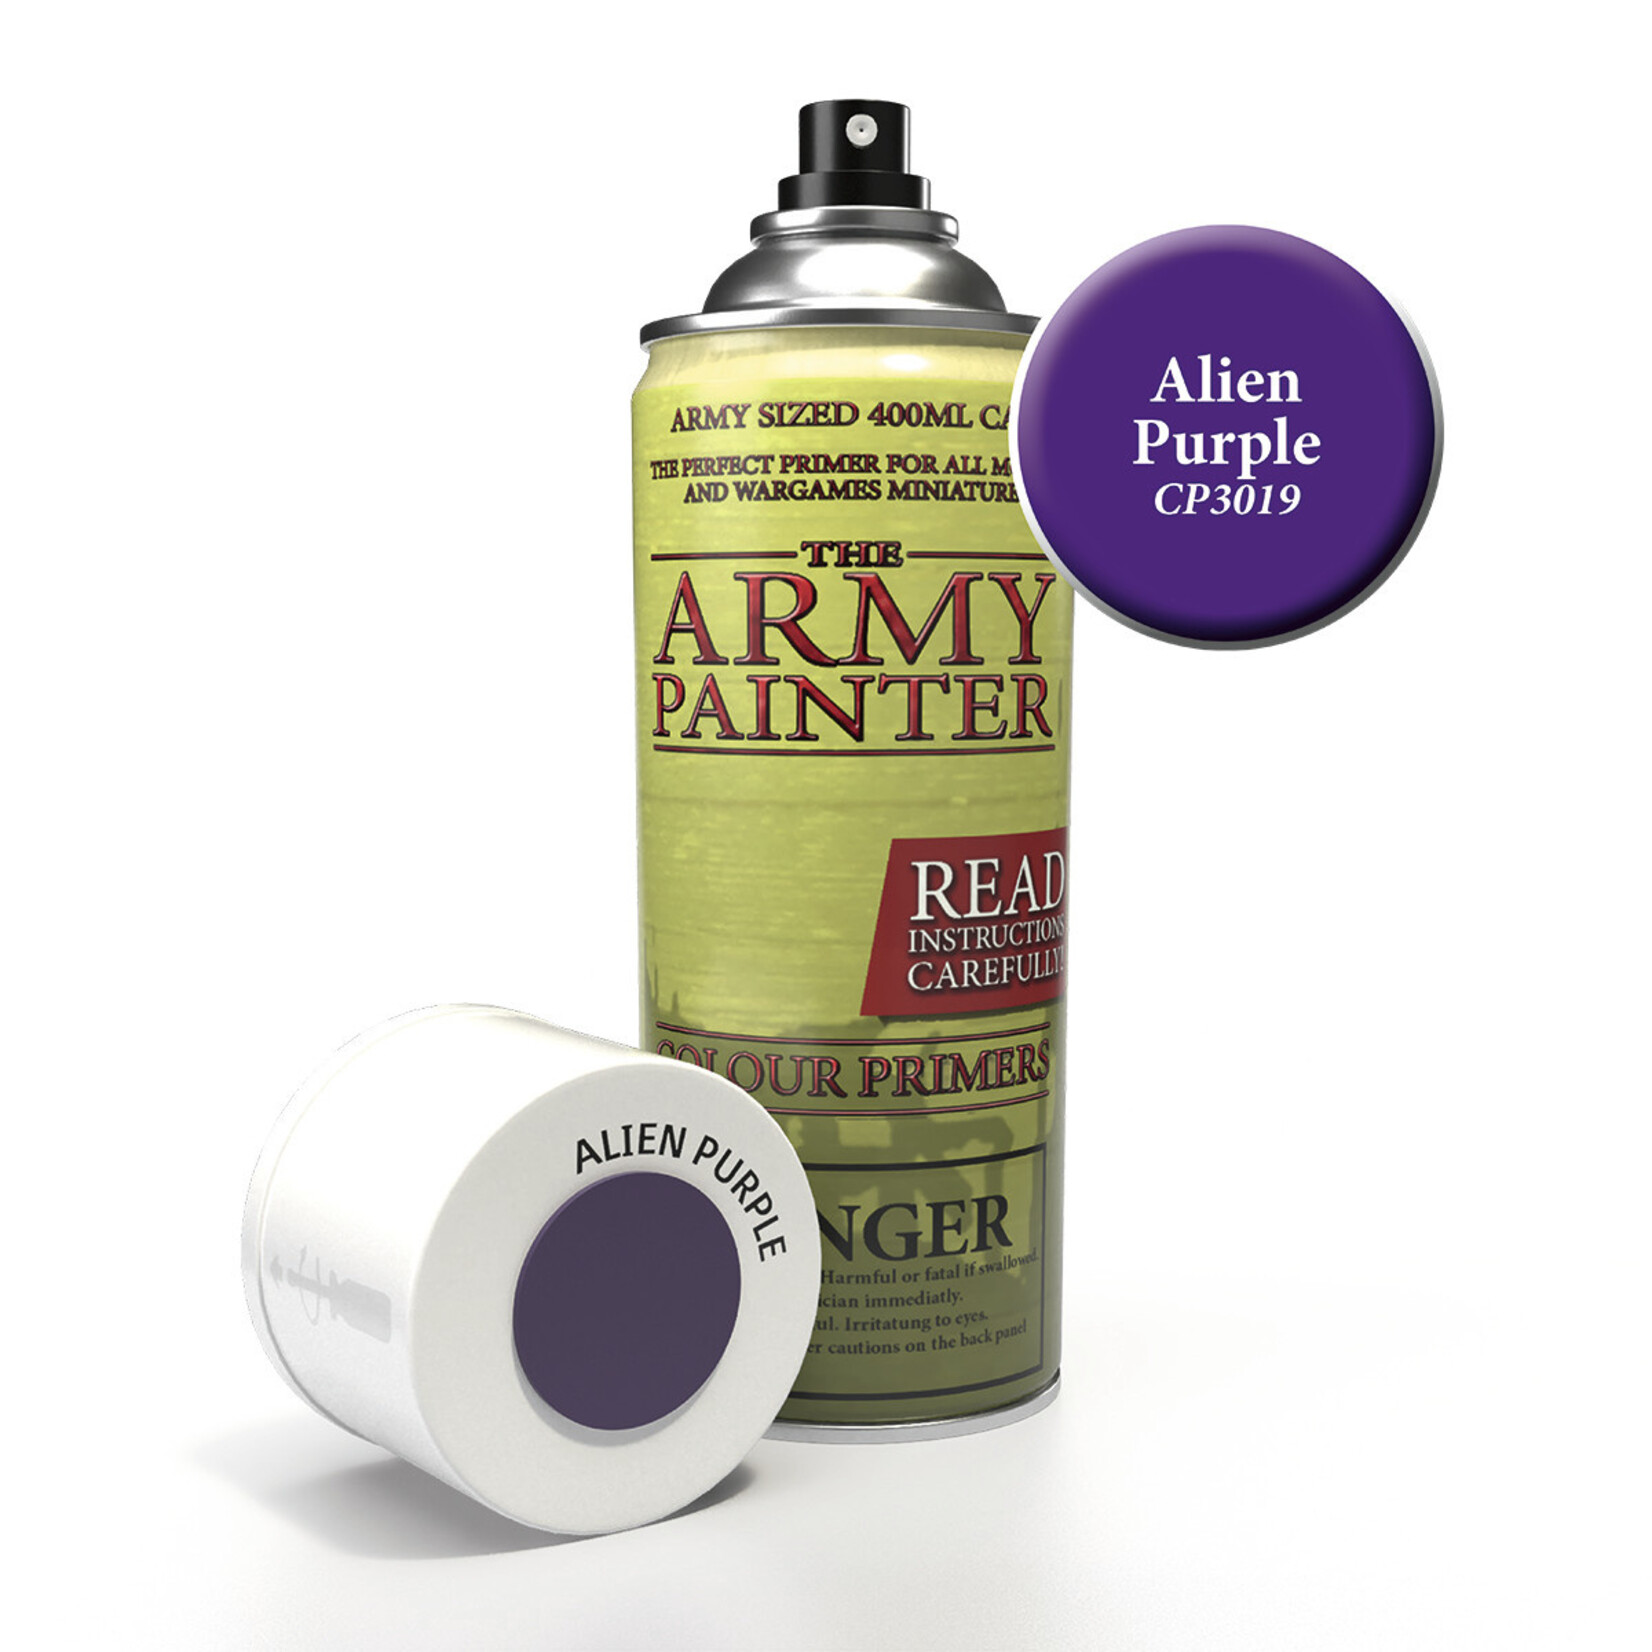 The Army Painter Colour Primer: Alien Purple